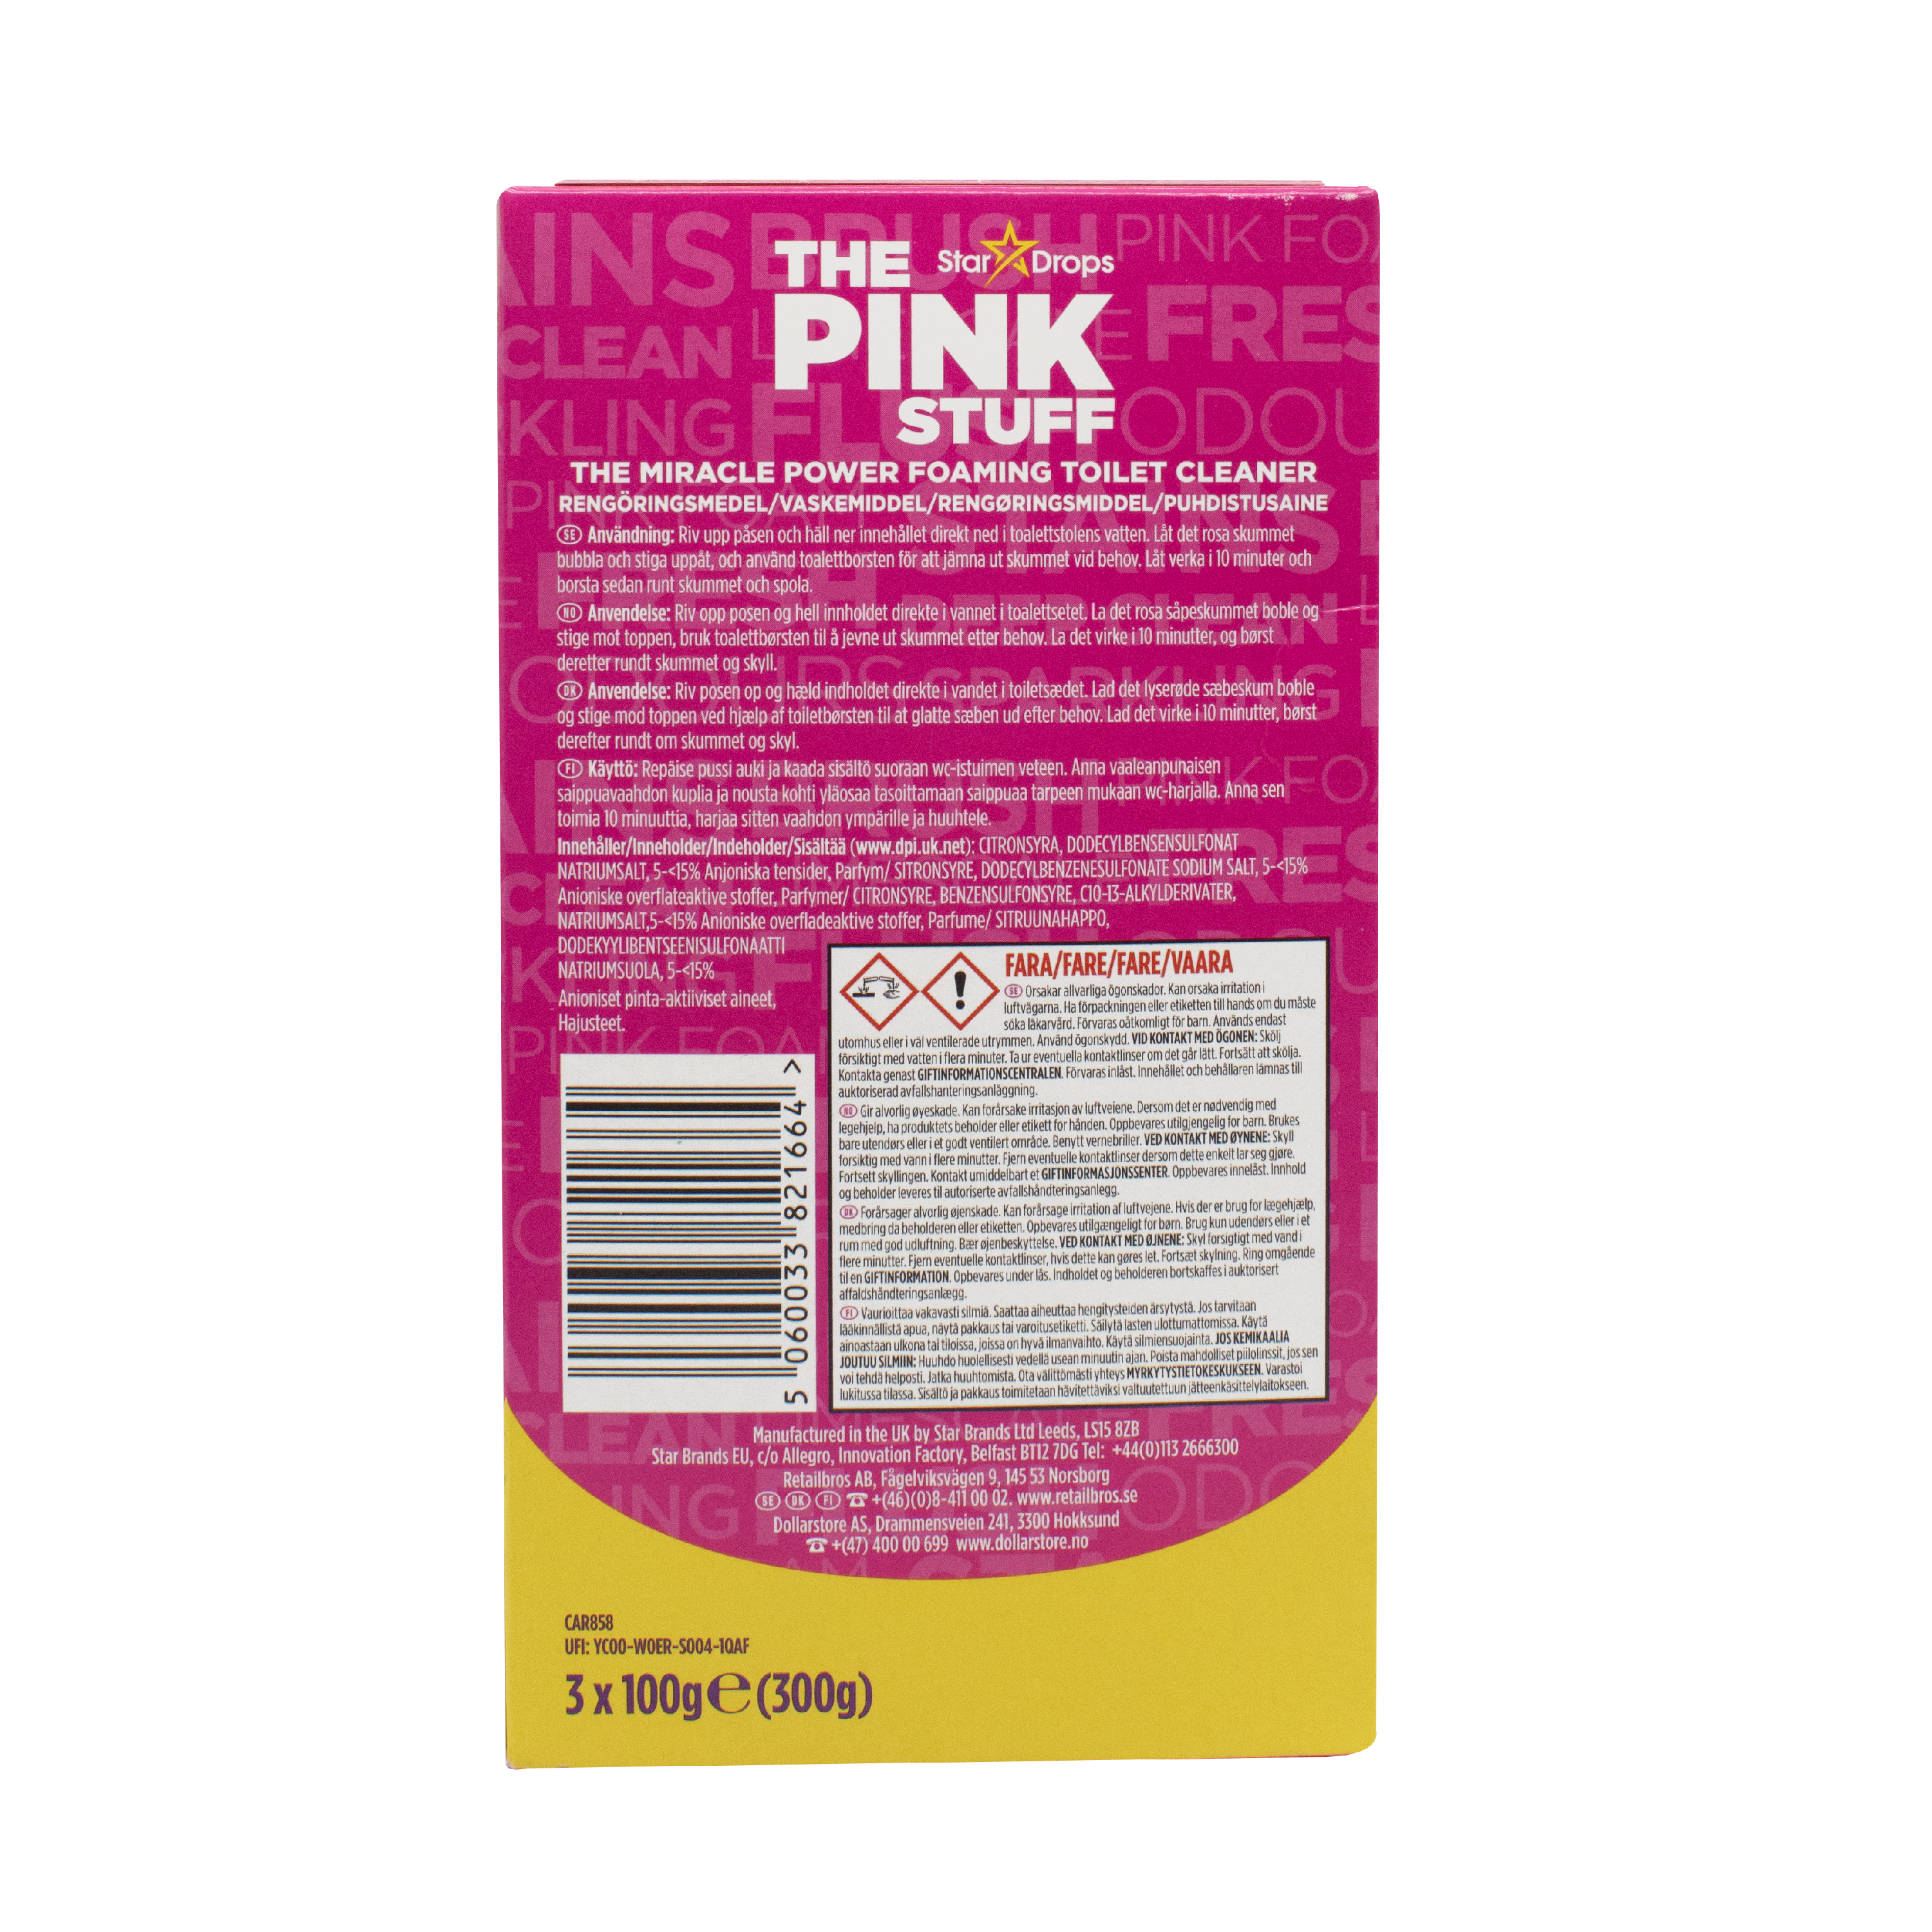 Порошок для чистки унитаза The Pink Stuff 300 г (3 x 100 г) - фото 2